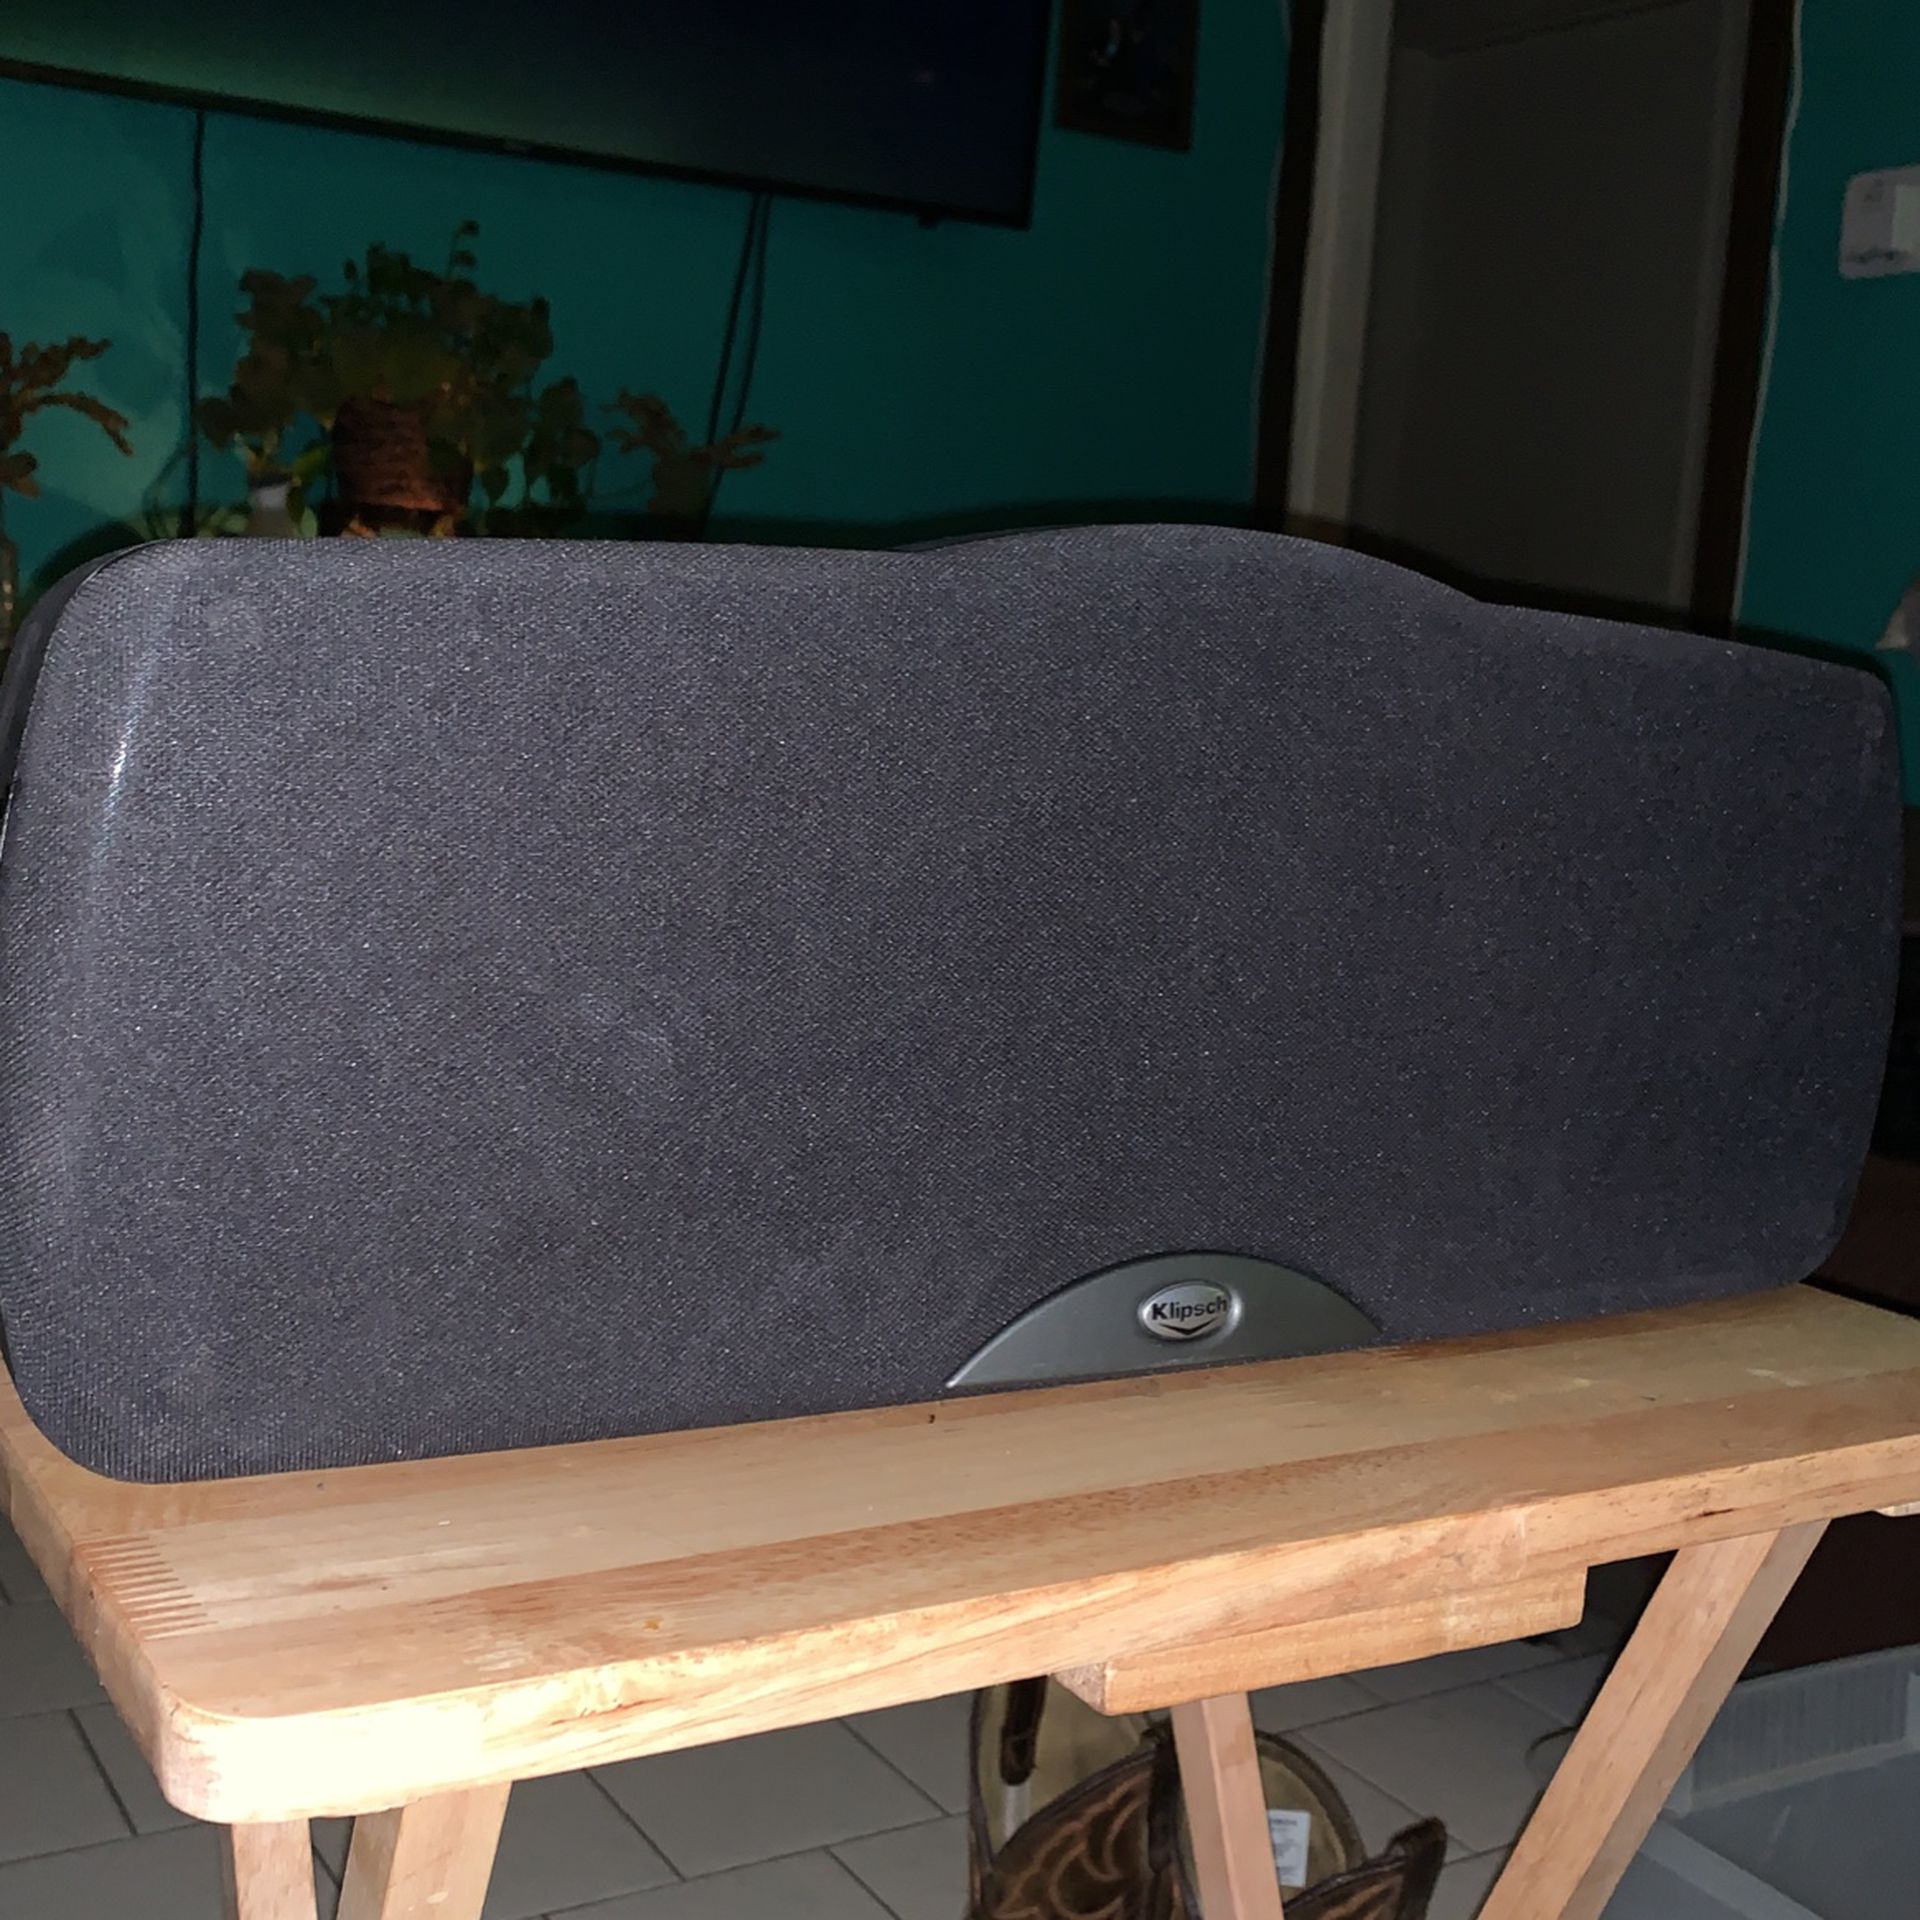  Home Surround sound Center Crystal Sound Speaker 